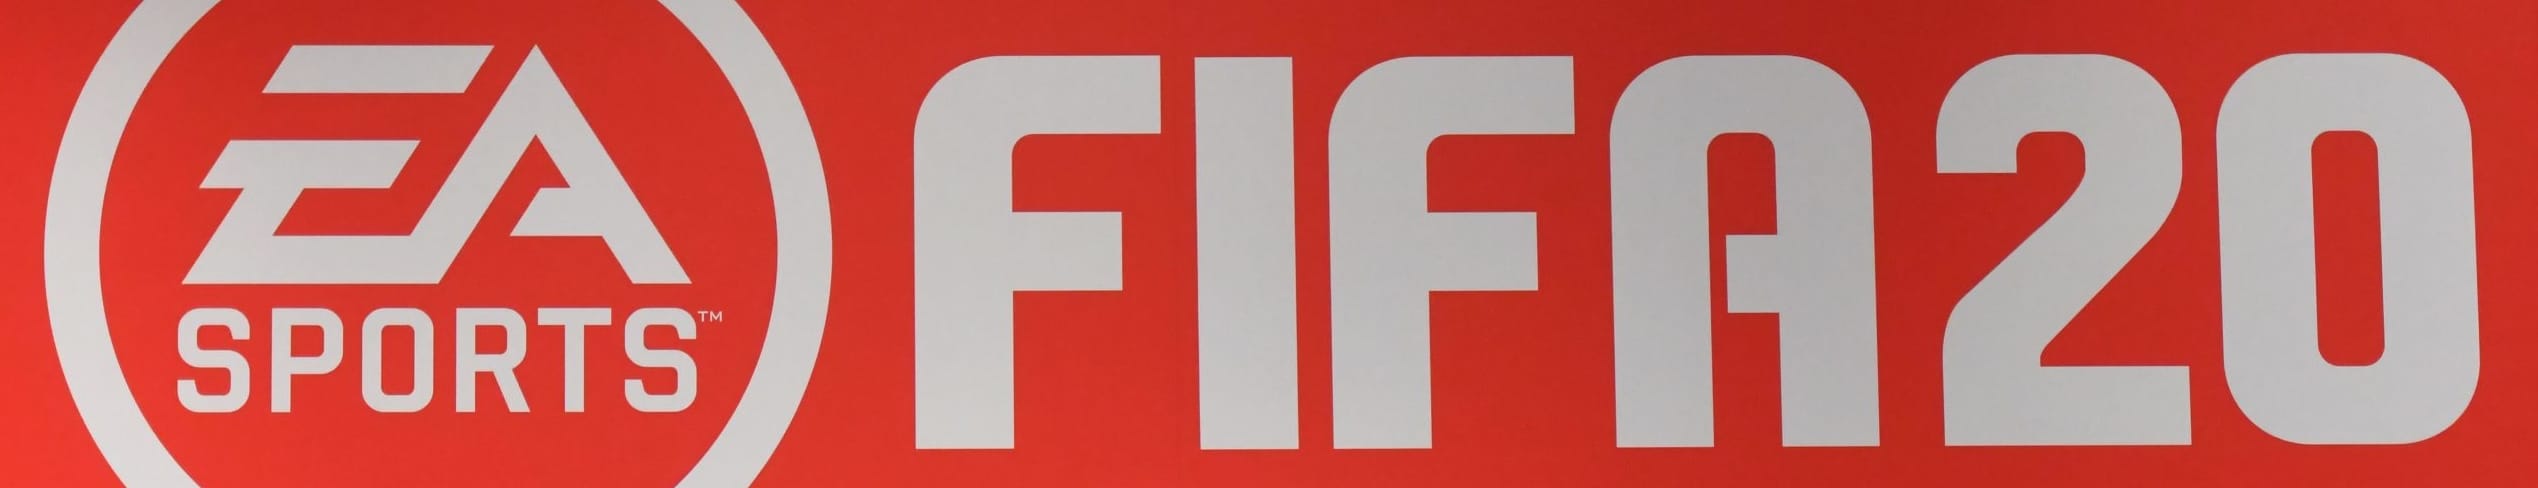 I trucchi di FIFA 20: dai crediti infiniti ai tricks, tutto quello che dovete sapere